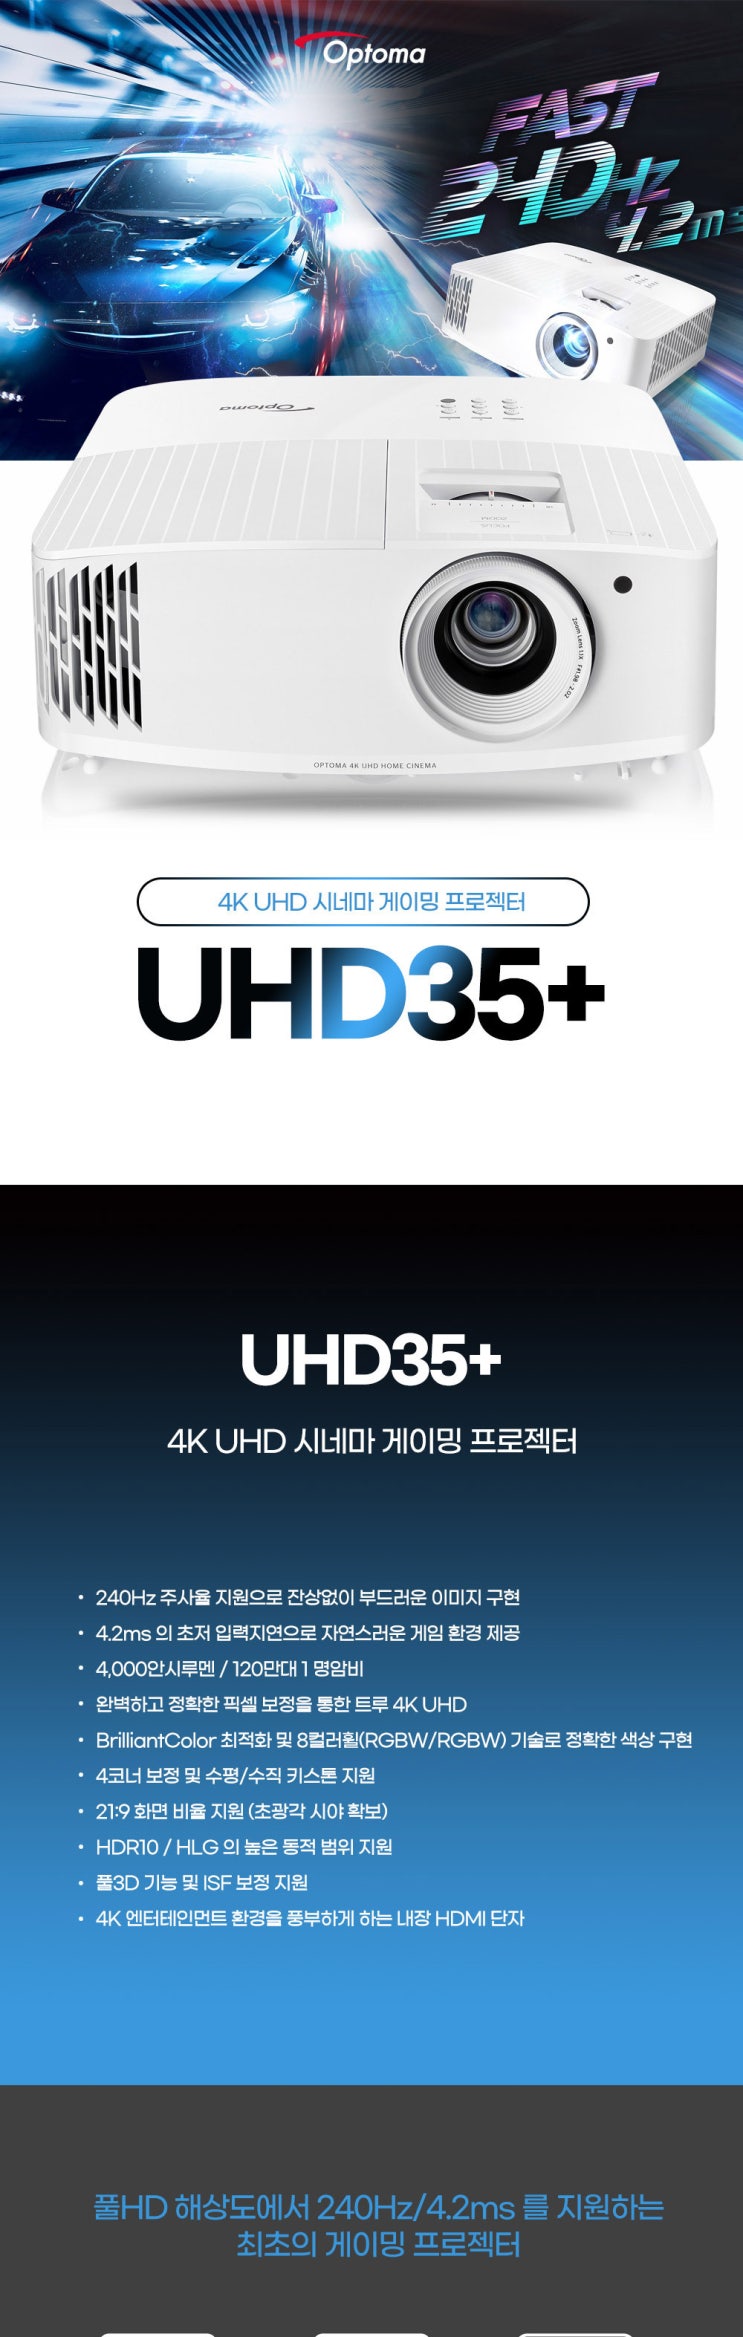 옵토마 UHD35+ 빔프로젝터 판매 4K UHD /투사거리표